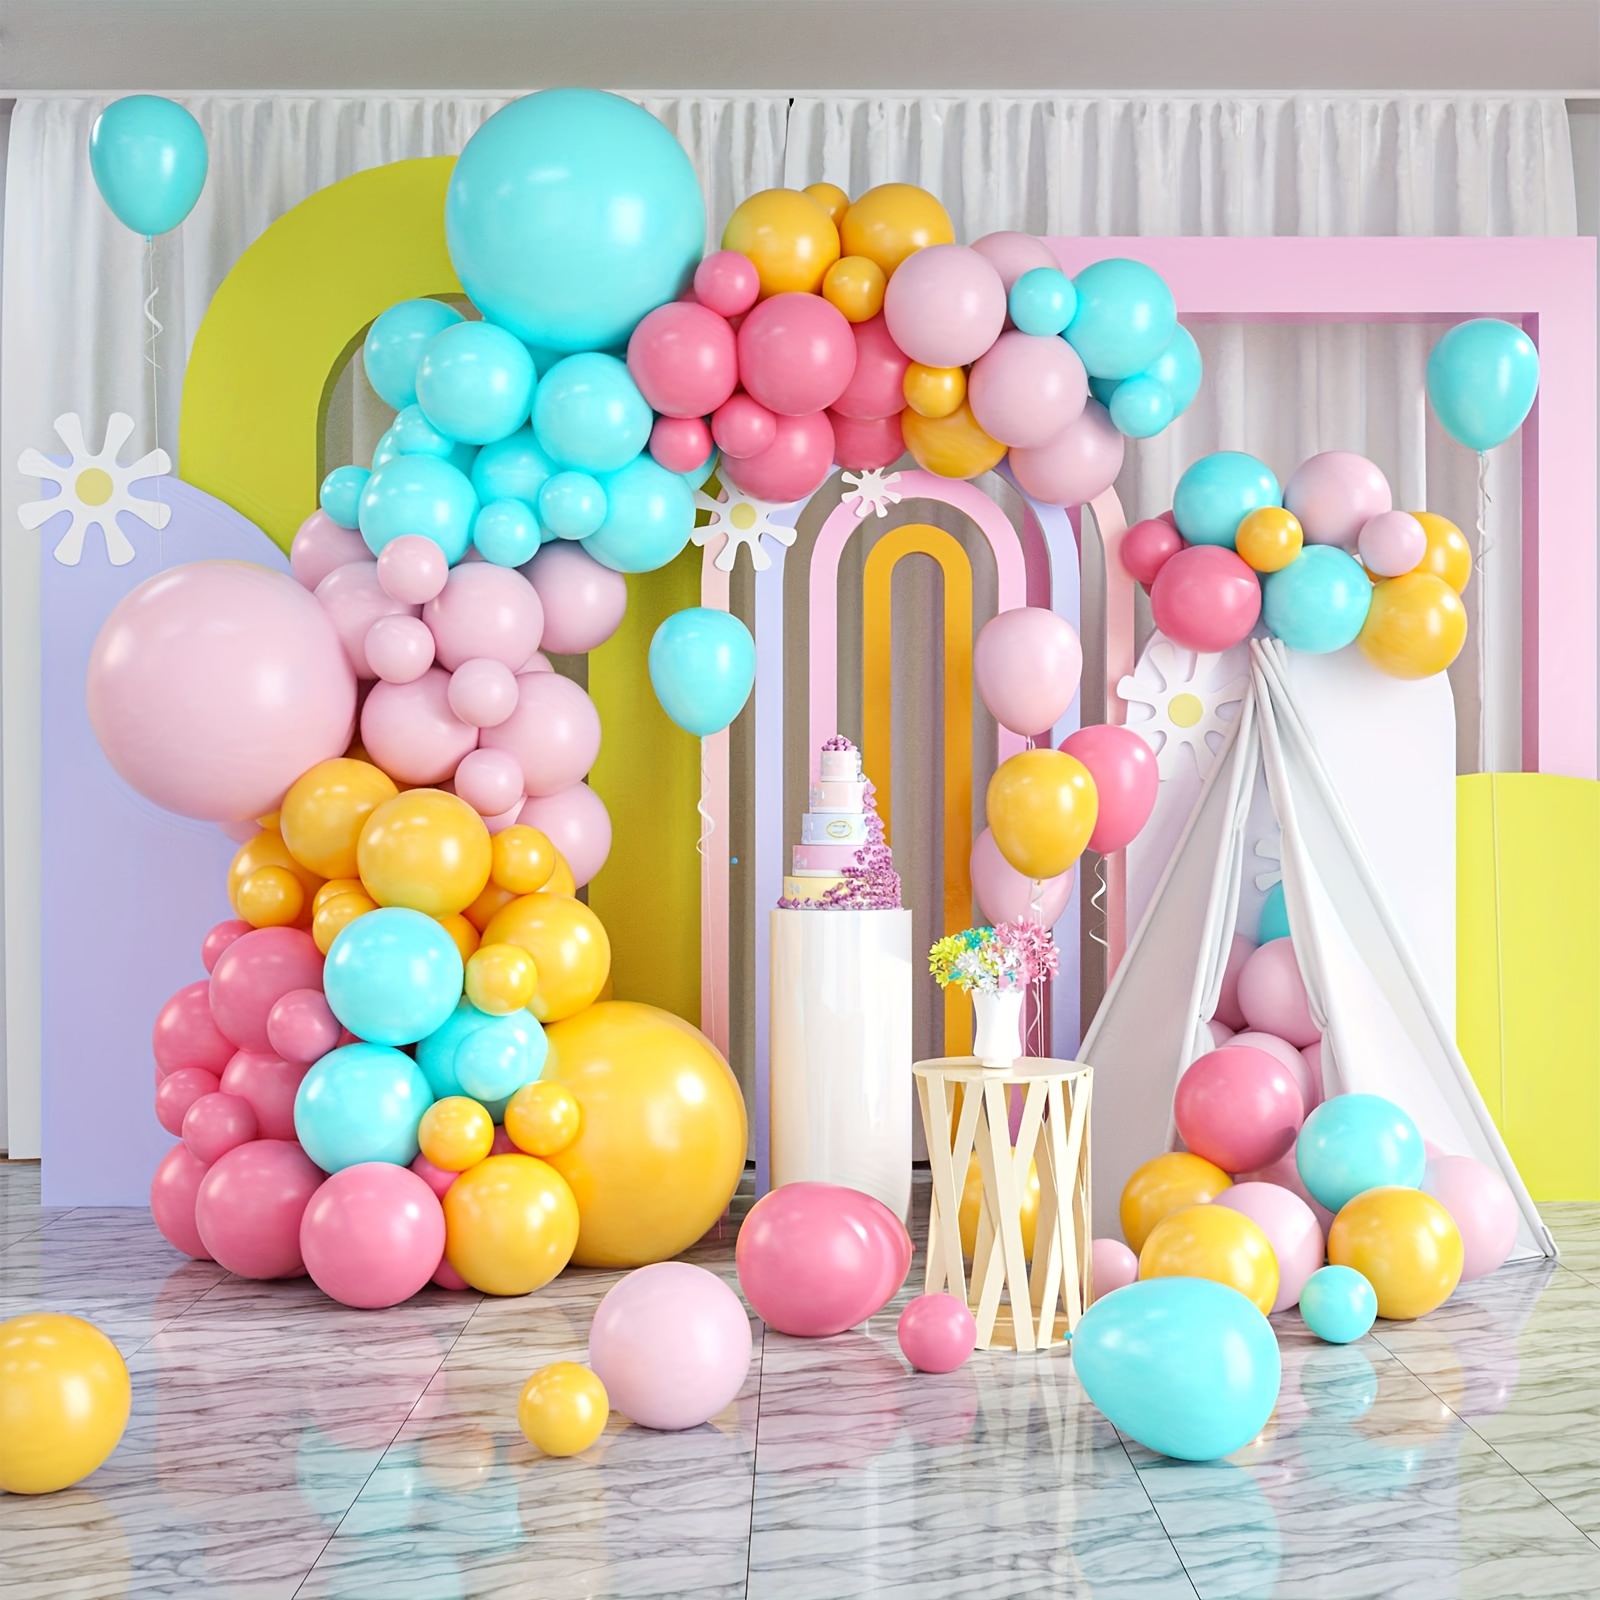 Kit arco per palloncini compleanno Peppa Pig, kit ghirlanda di palloncini  fai da te opaca di qualità PREMIUM arcobaleno pastello, decorazioni per  feste Peppa Pig -  Italia